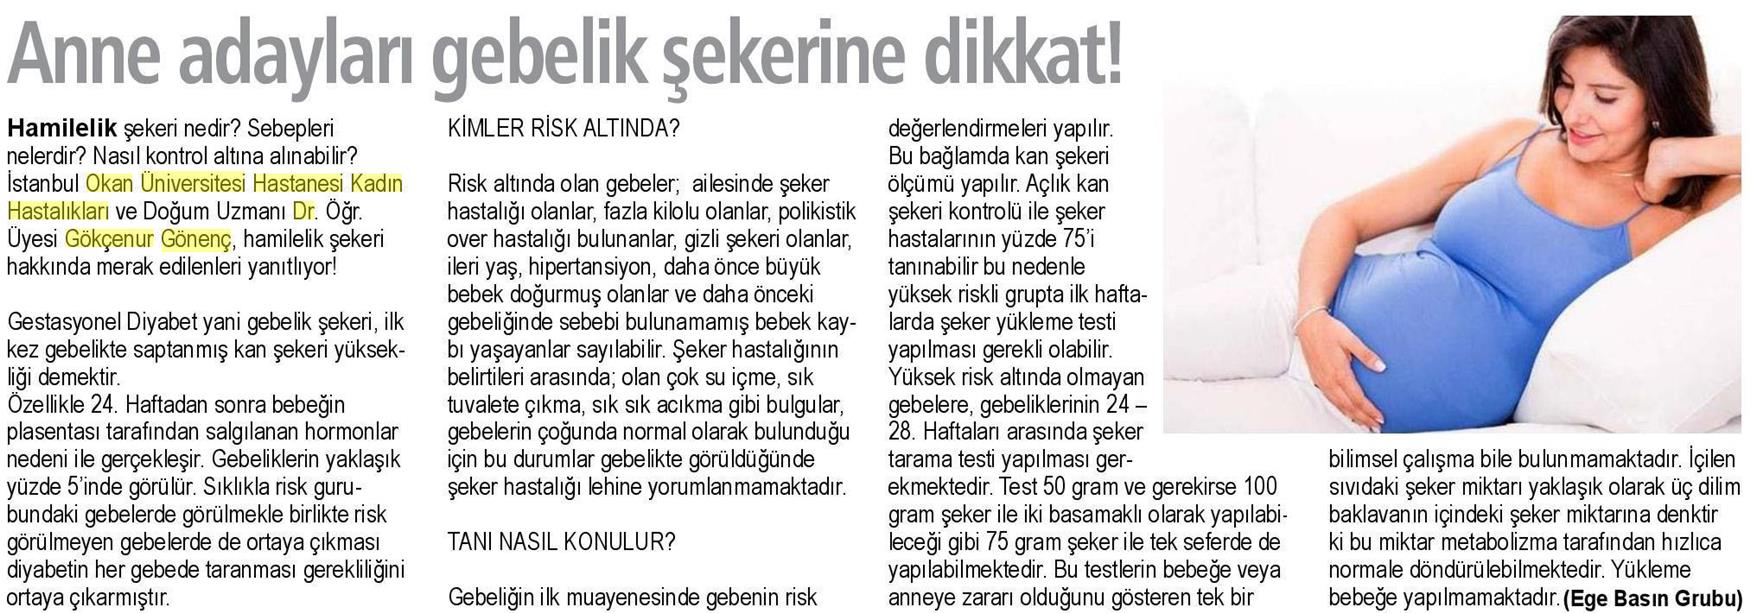 16.04.2019 Sağlık Gazetesi ANNE ADAYLARI GEBELİK ŞEKERİNE DİKKAT!